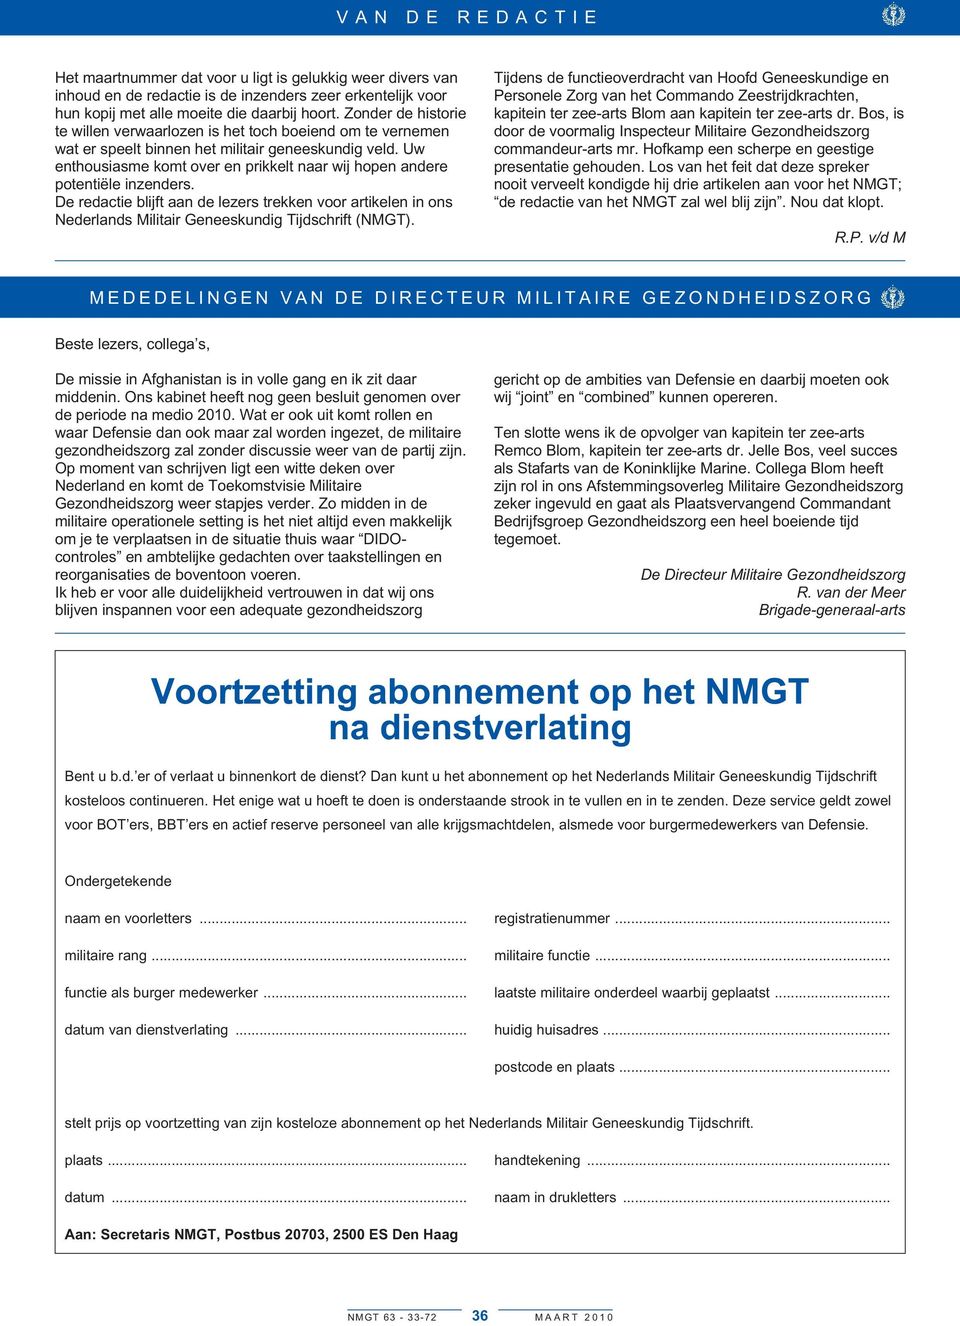 Uw enthousiasme komt over en prikkelt naar wij hopen andere potentiële inzenders. De redactie blijft aan de lezers trekken voor artikelen in ons Nederlands Militair Geneeskundig Tijdschrift (NMGT).